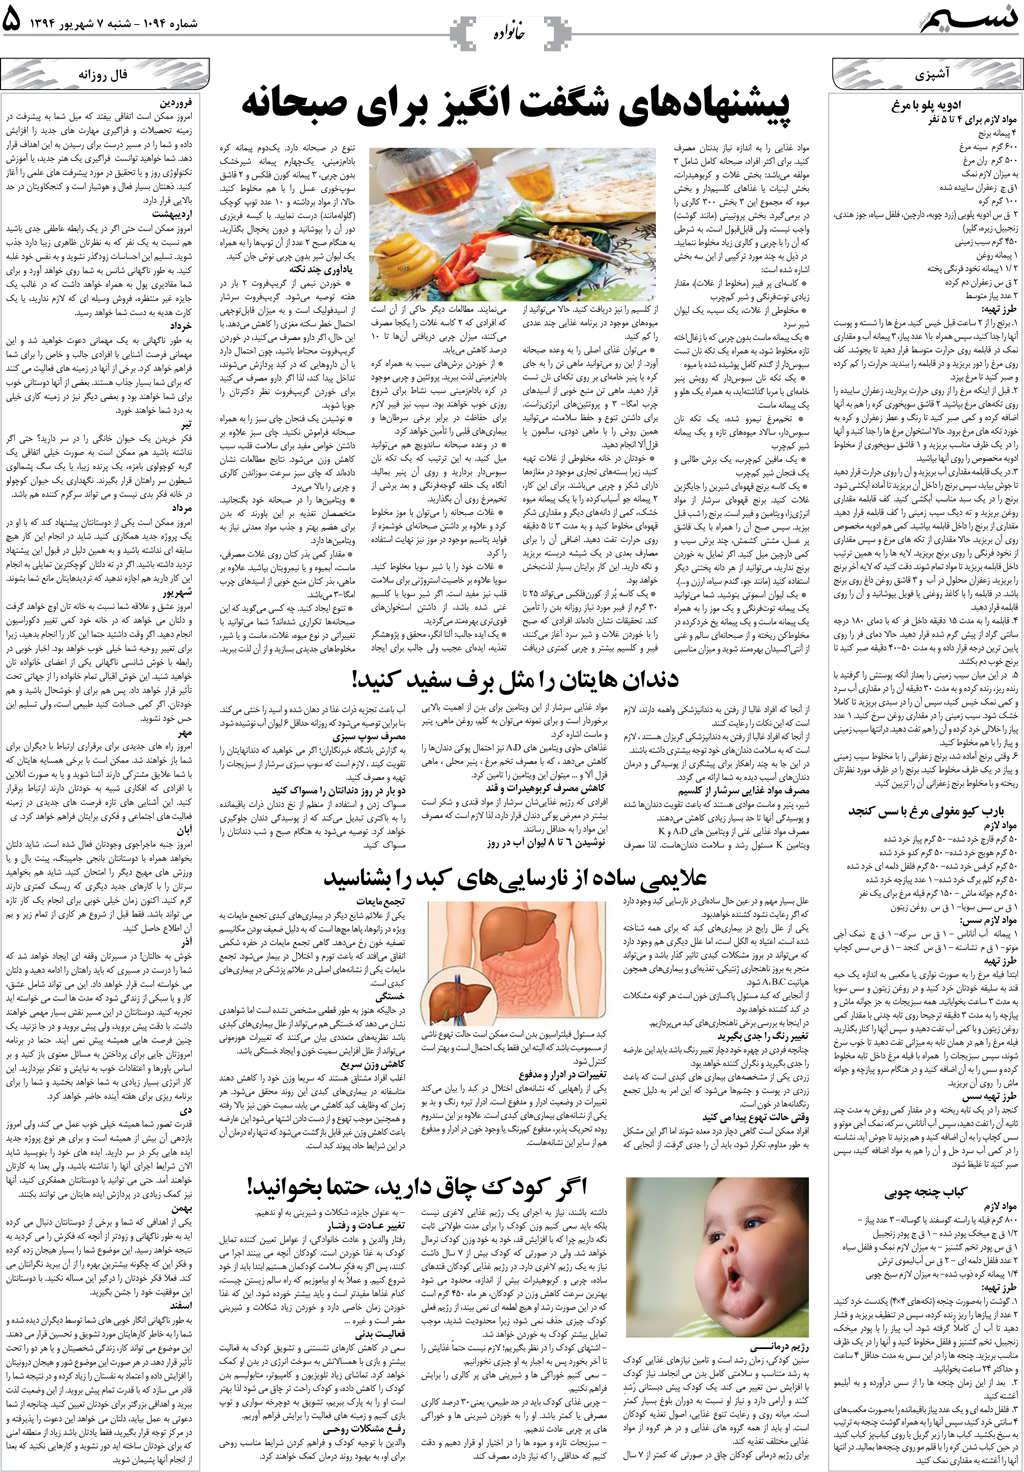 صفحه خانواده روزنامه نسیم شماره 1094